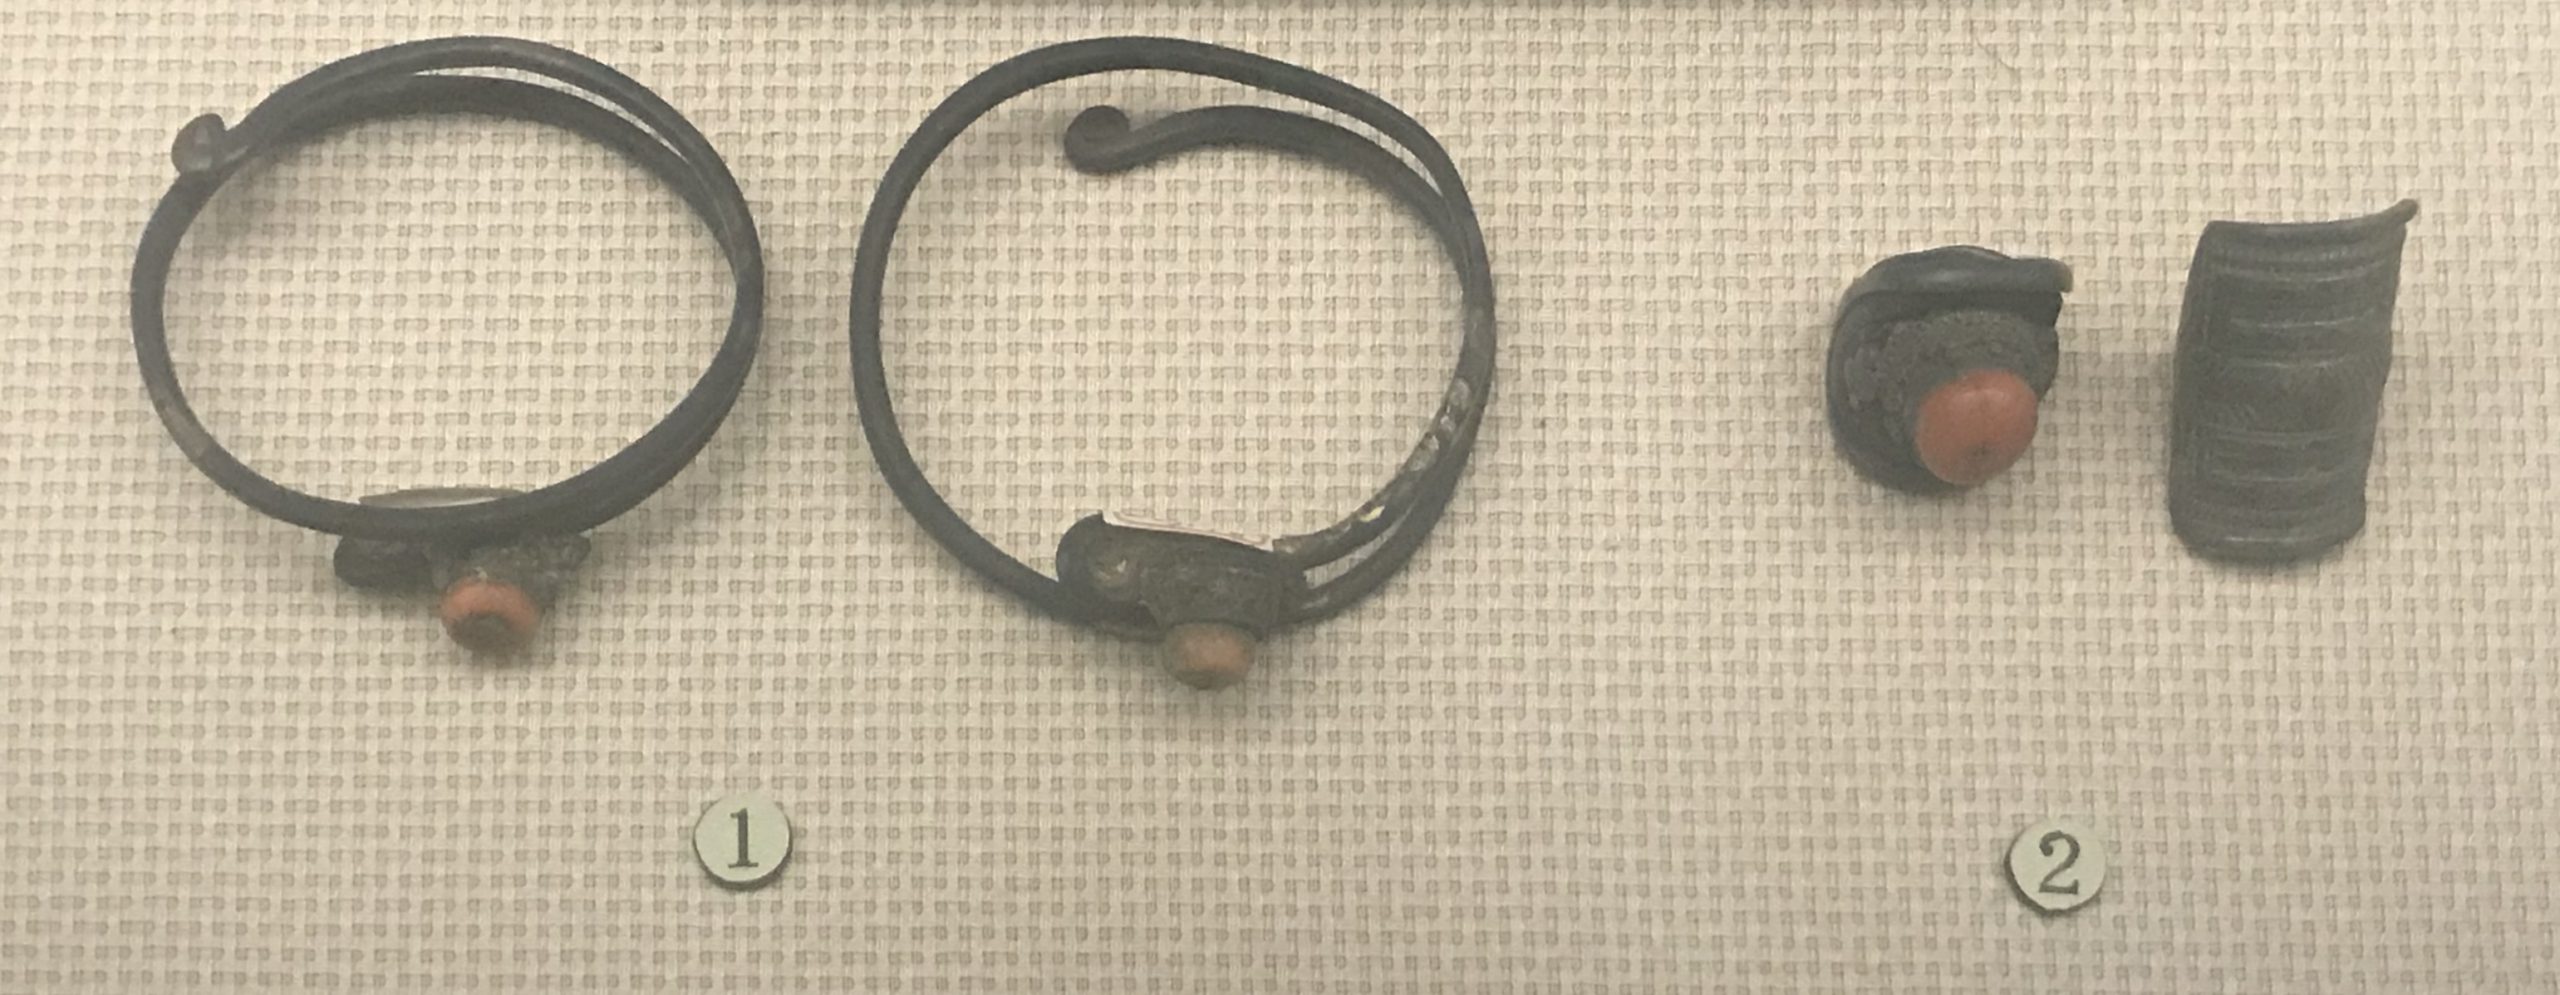 銀イアリング-銀指輪-チャン族アクセサリー-四川民族文物館-四川博物館-成都